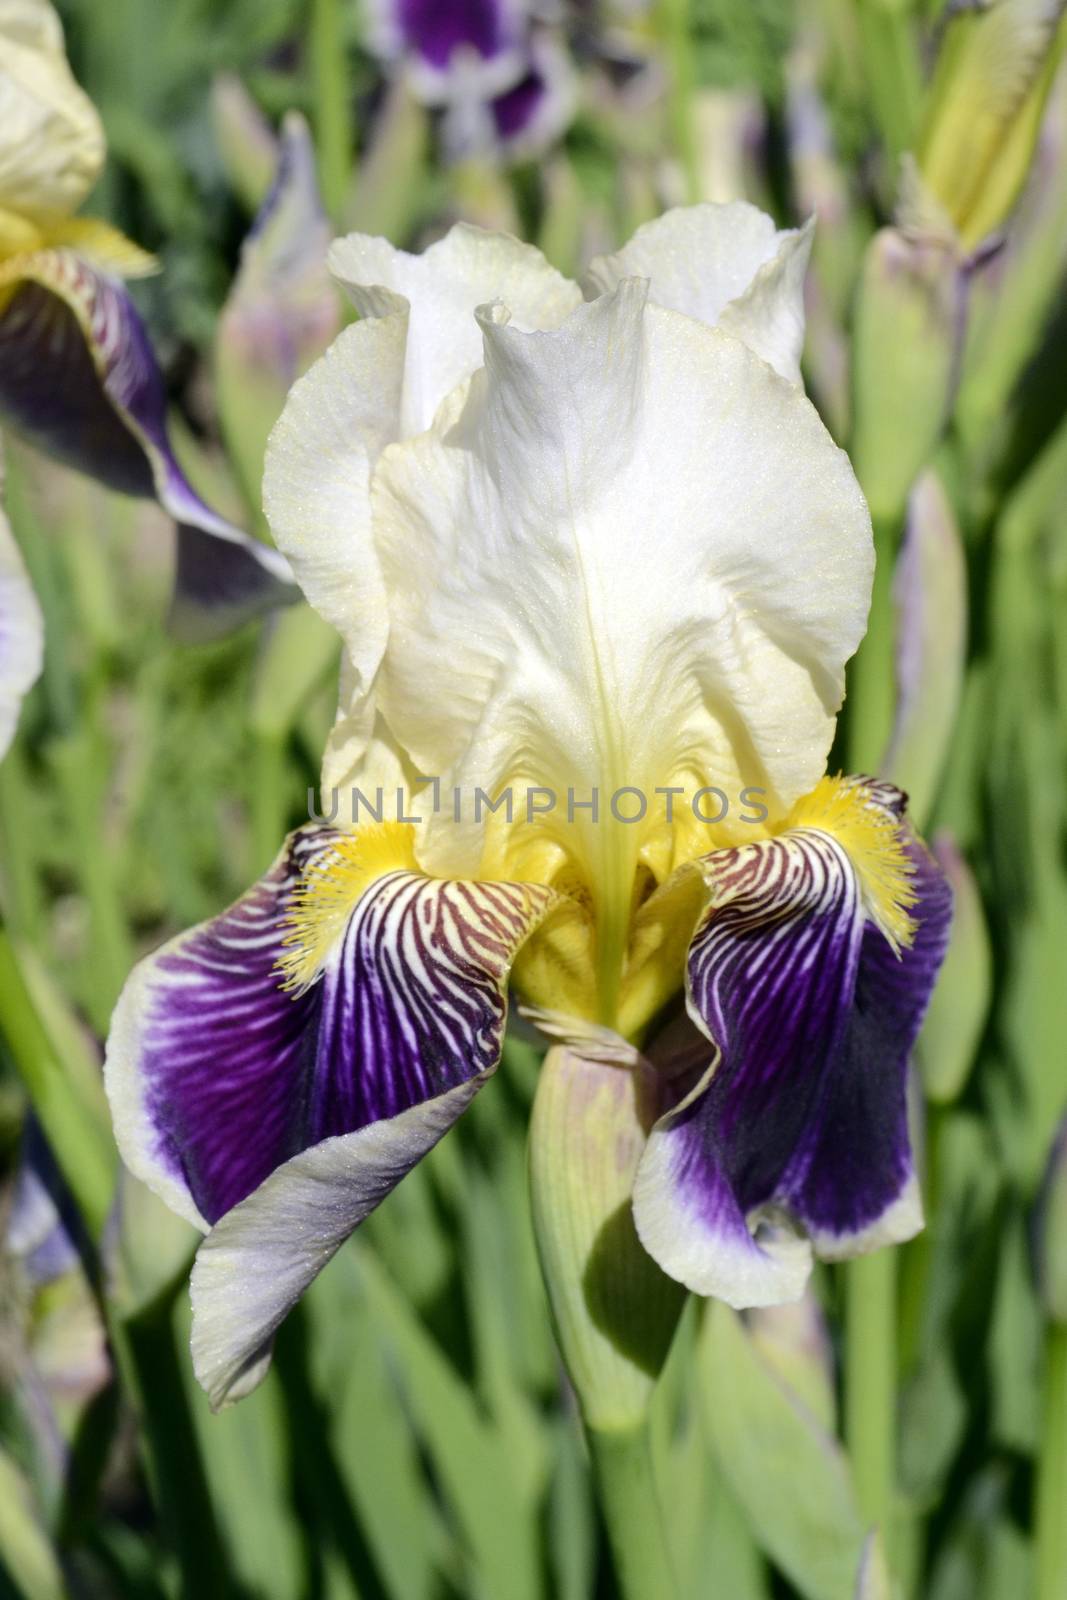 Violet with white iris flower on green garden background by hibrida13